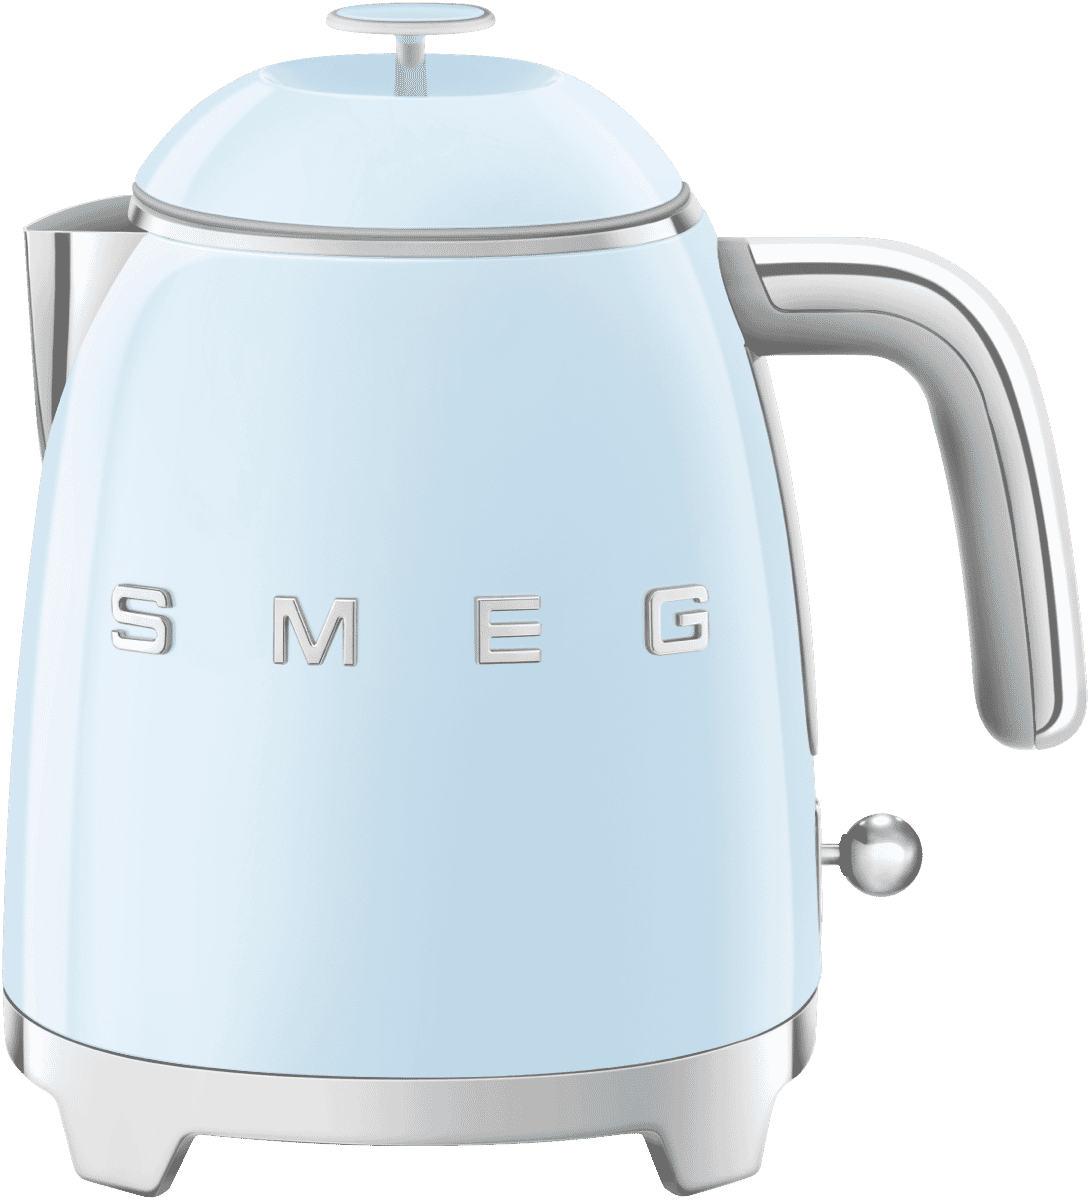 Smeg - Meet the Smeg KLF05 Mini Kettle, a lovely companion